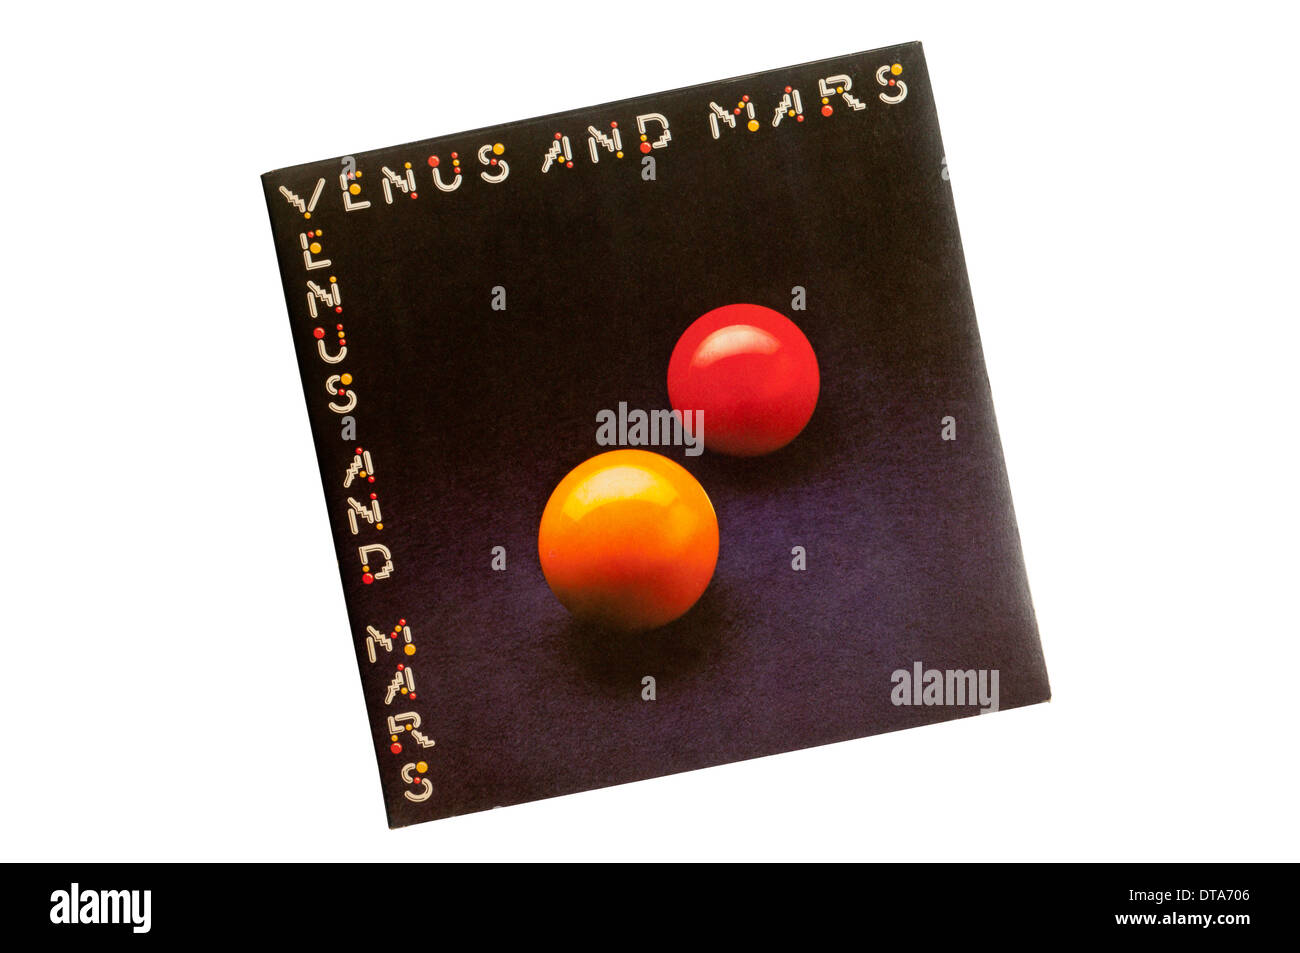 Venere e Marte è stato rilasciato nel 1975 ed è stato il quarto album di Paul McCartney e le ali. Foto Stock